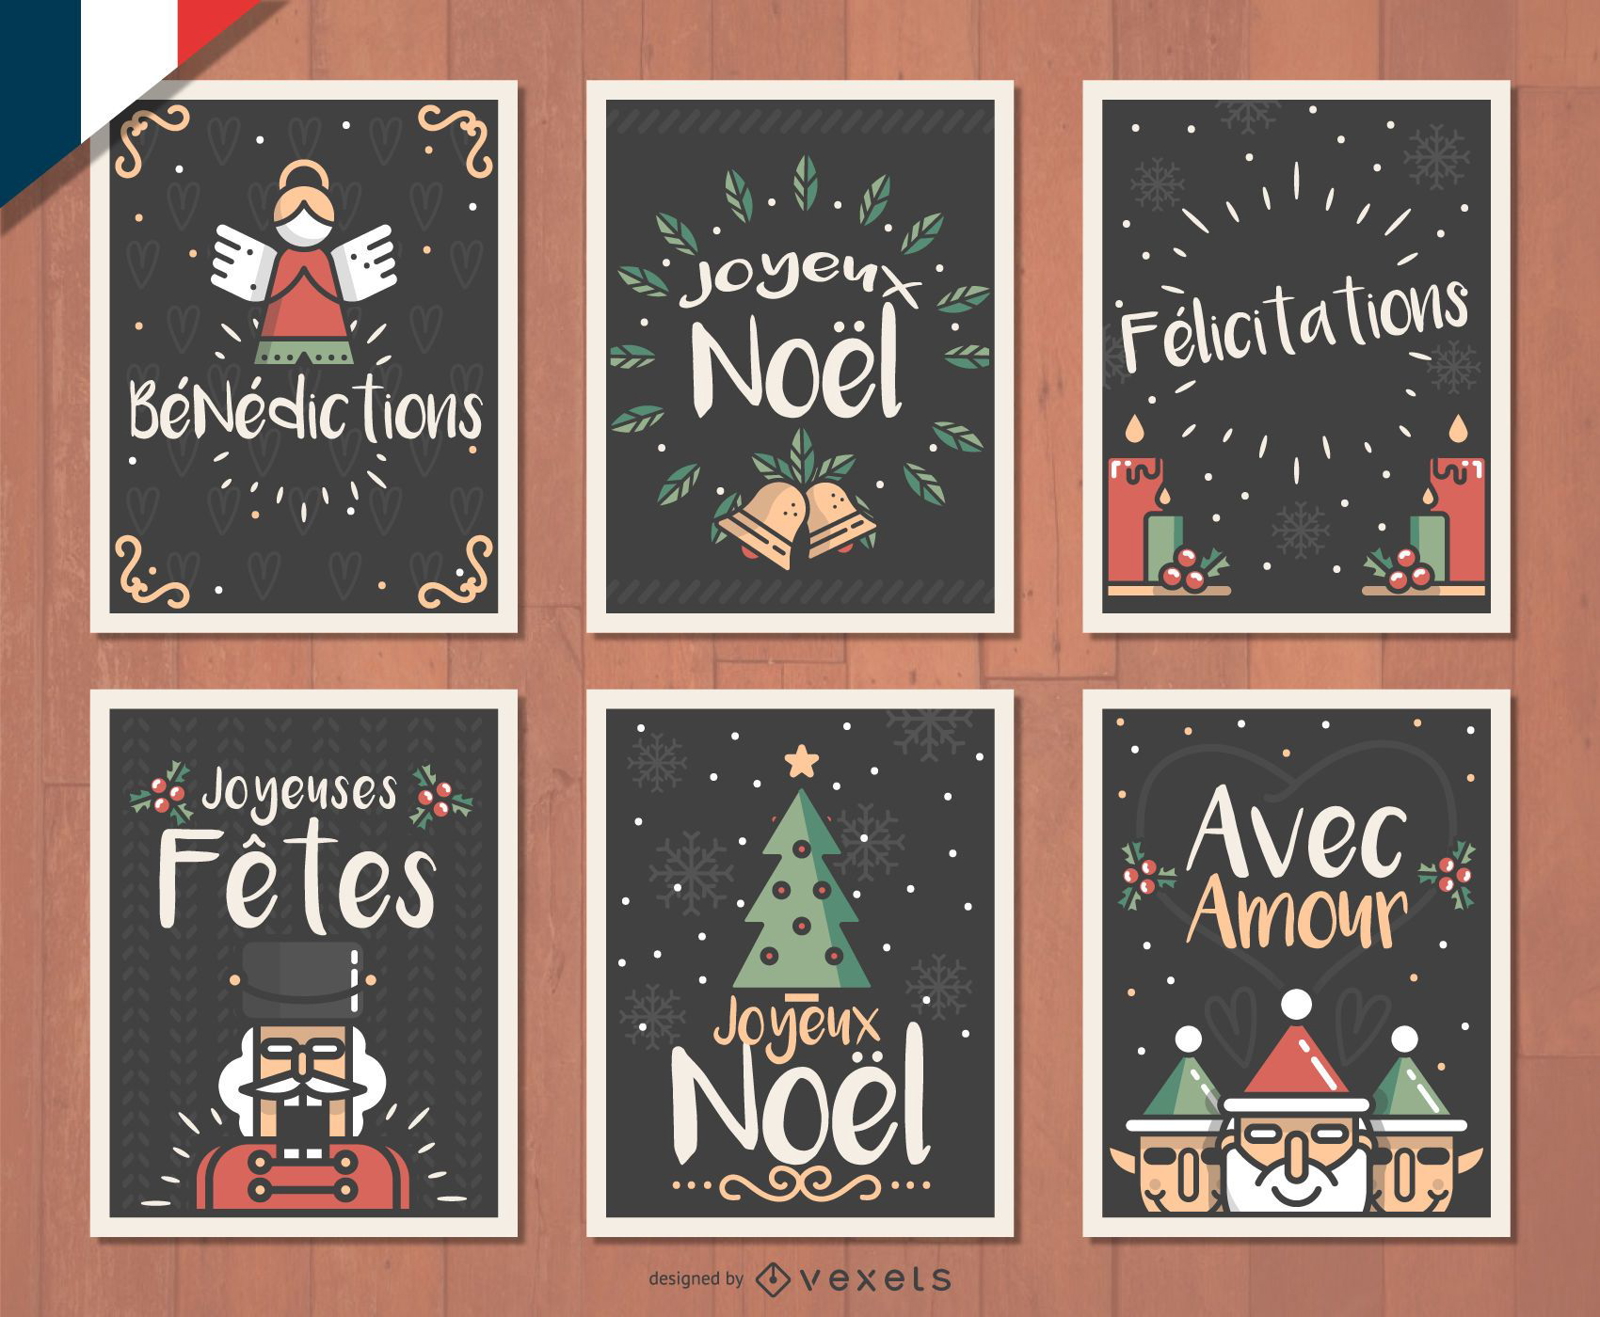 Französisches Joyeux Noel Weihnachtskartenset